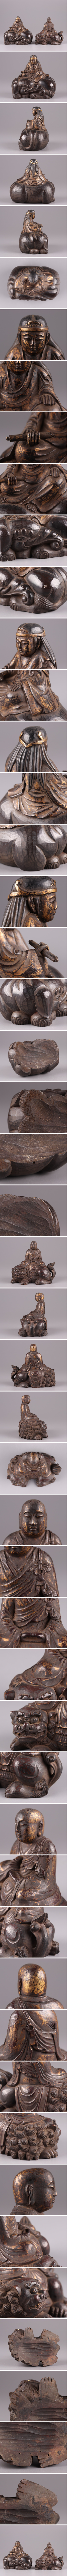 経済制裁仏教美術 時代木彫 塗金 文殊菩薩 普賢菩薩 仏像 一対 古作 時代物 極上品 初だし品 2681 仏像